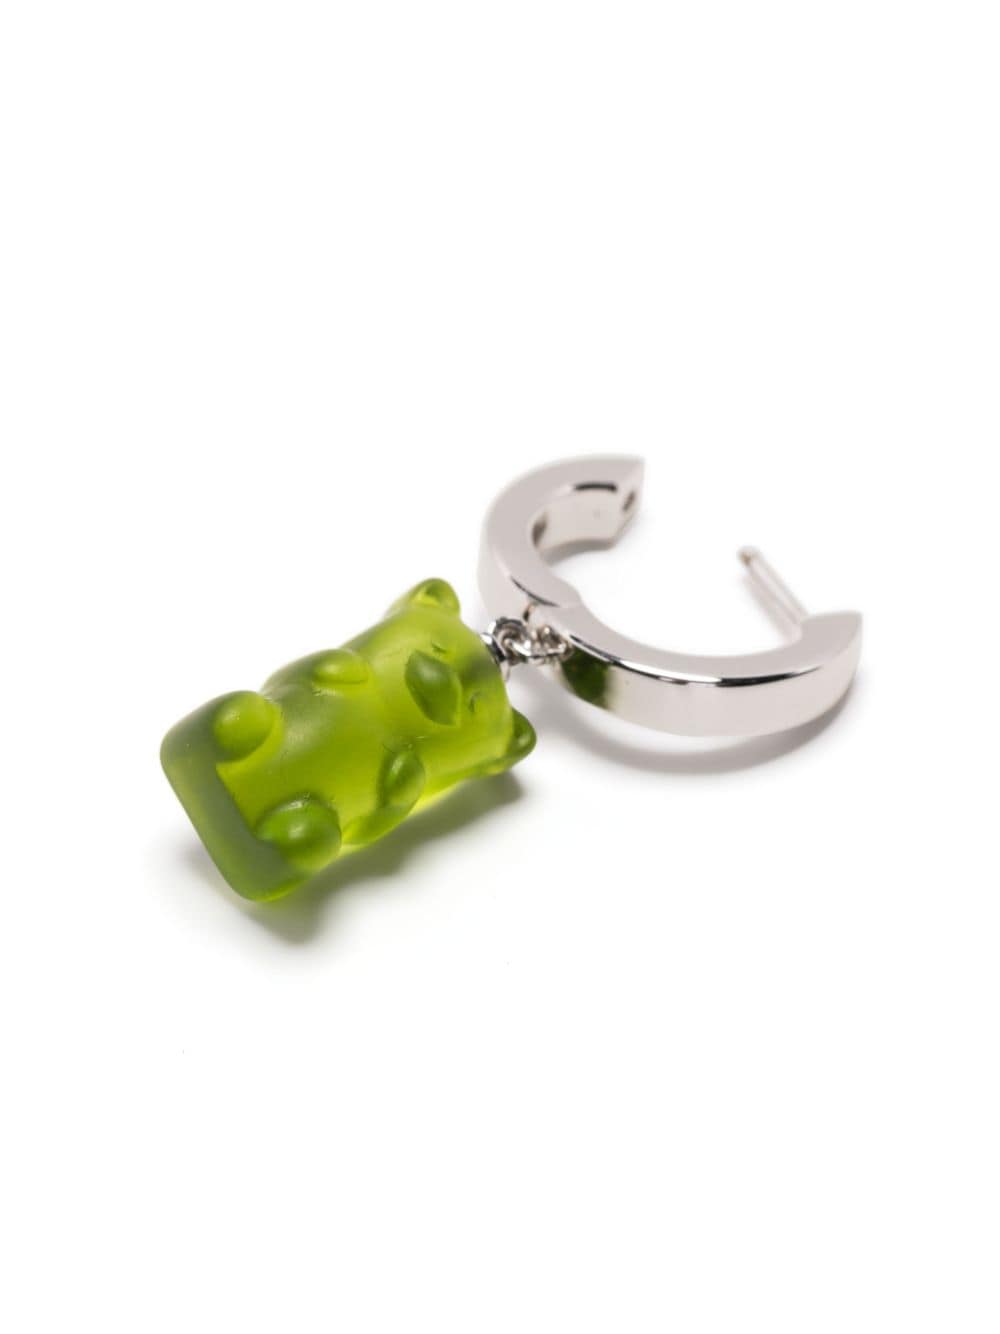 DARKAI gummy-bear pendant earring - Zilver